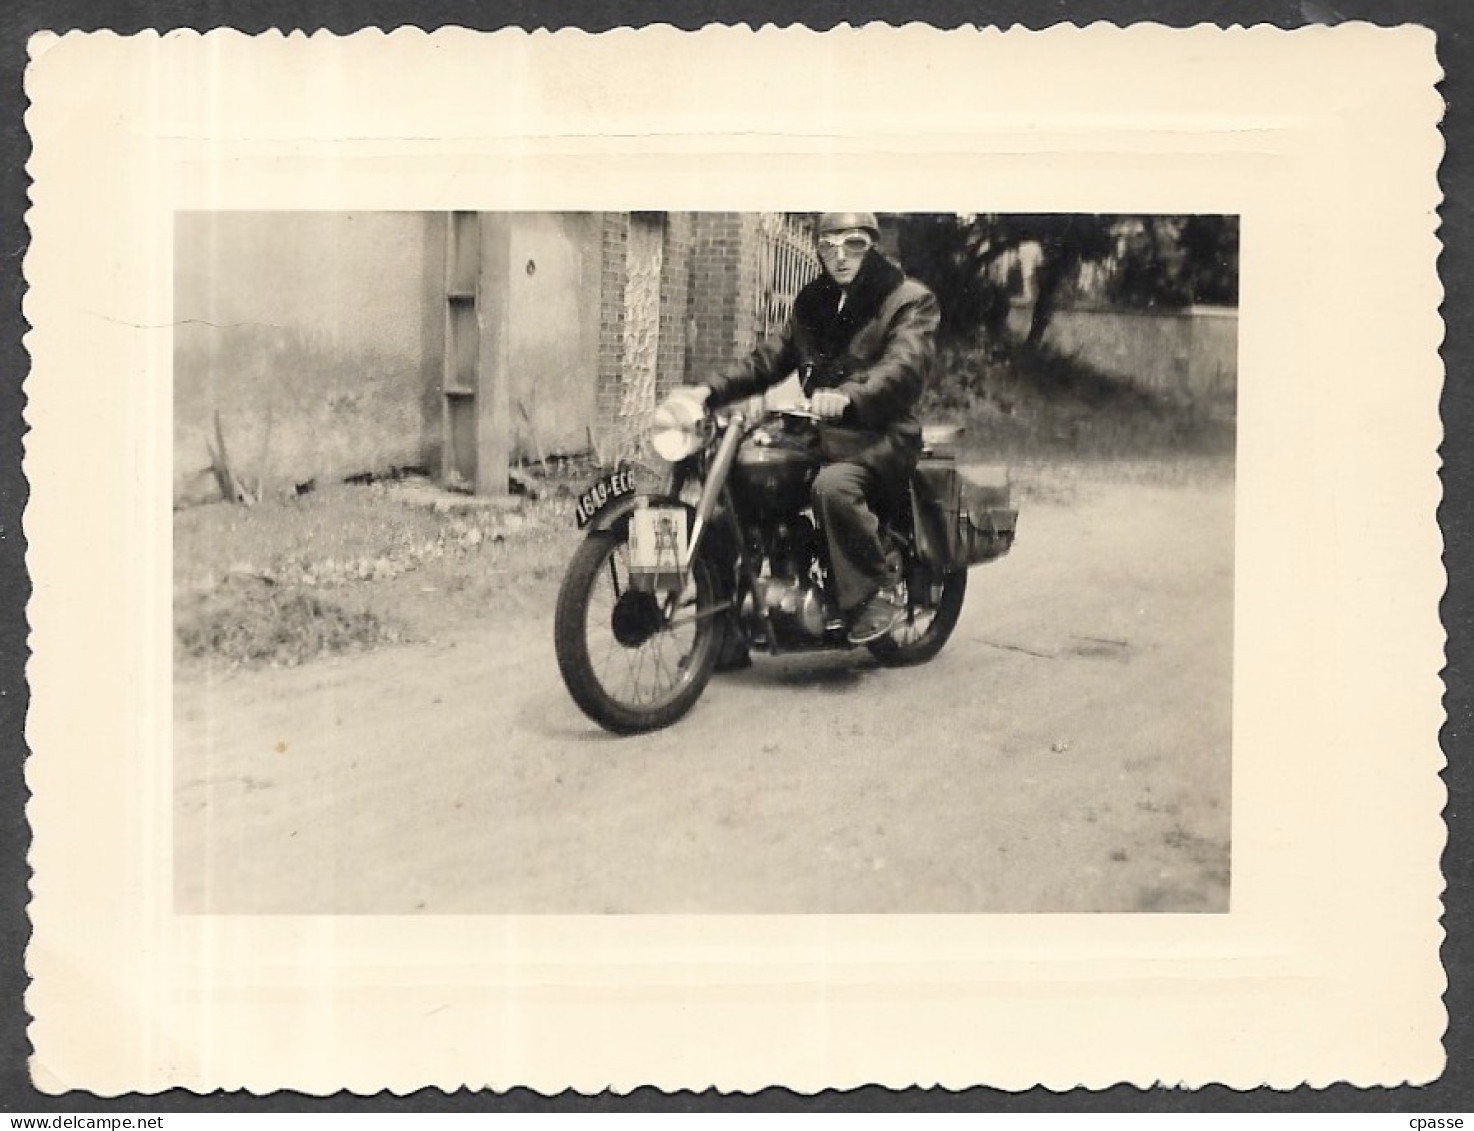 PHOTO Photographie Amateur - Homme Sur Moto Immatriculée 1649 EC6 Avec Bidon D'huile VEEDOL - Automobile